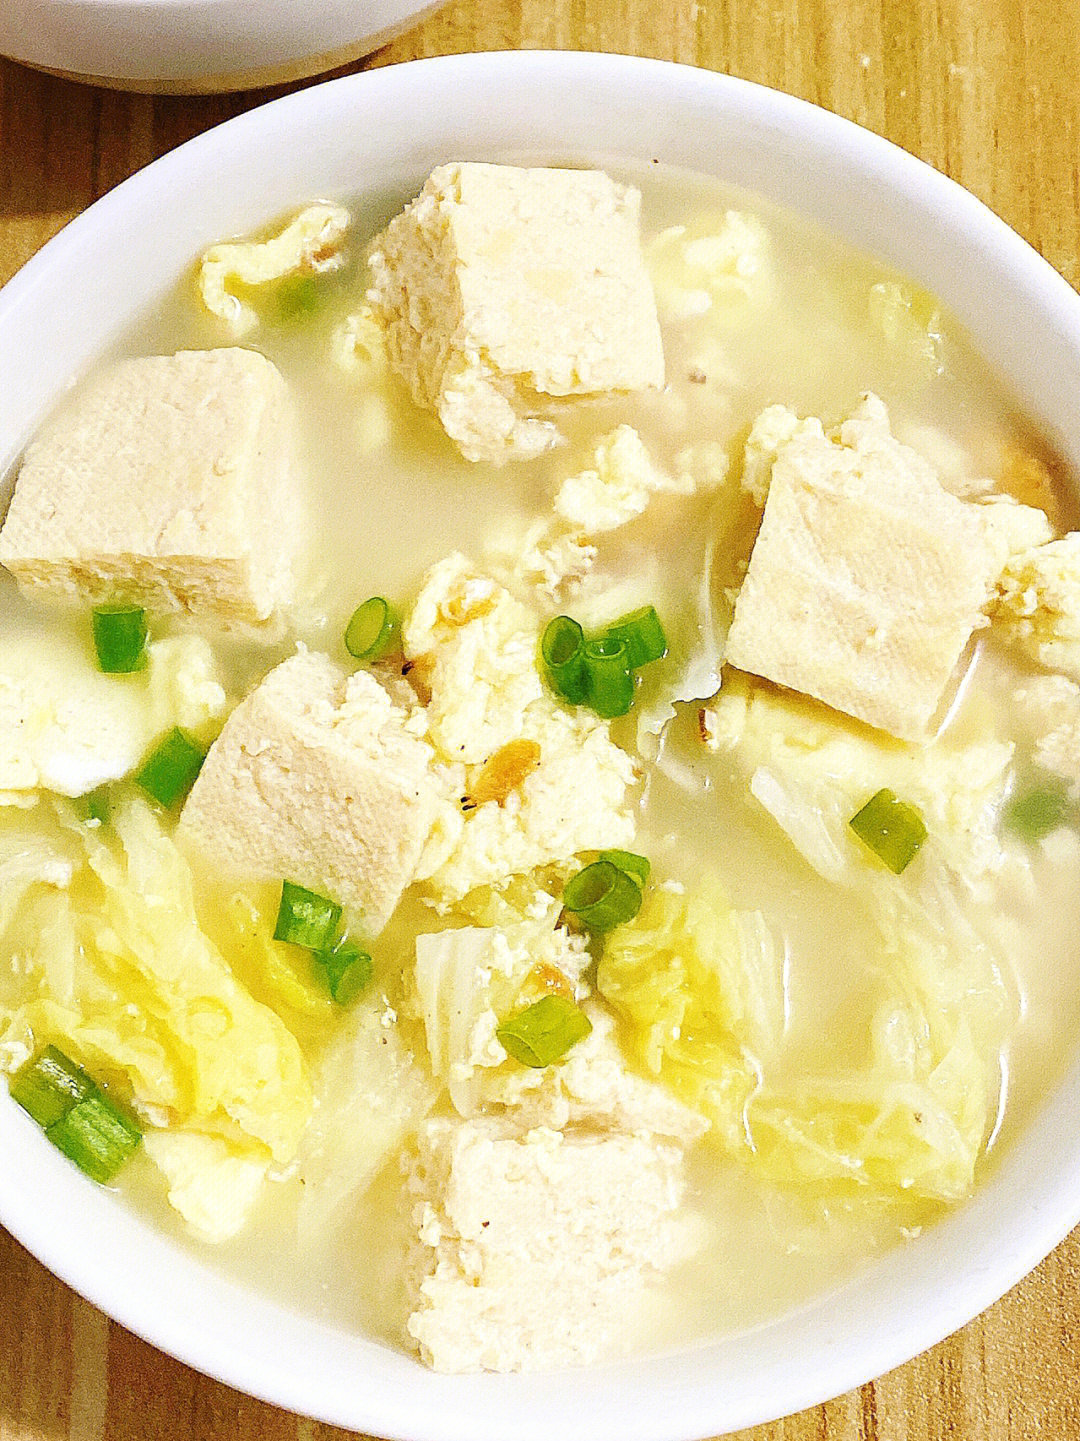 今天分享一道低脂高蛋白的减脂汤,冻豆腐鸡蛋白菜汤,做法都超简单